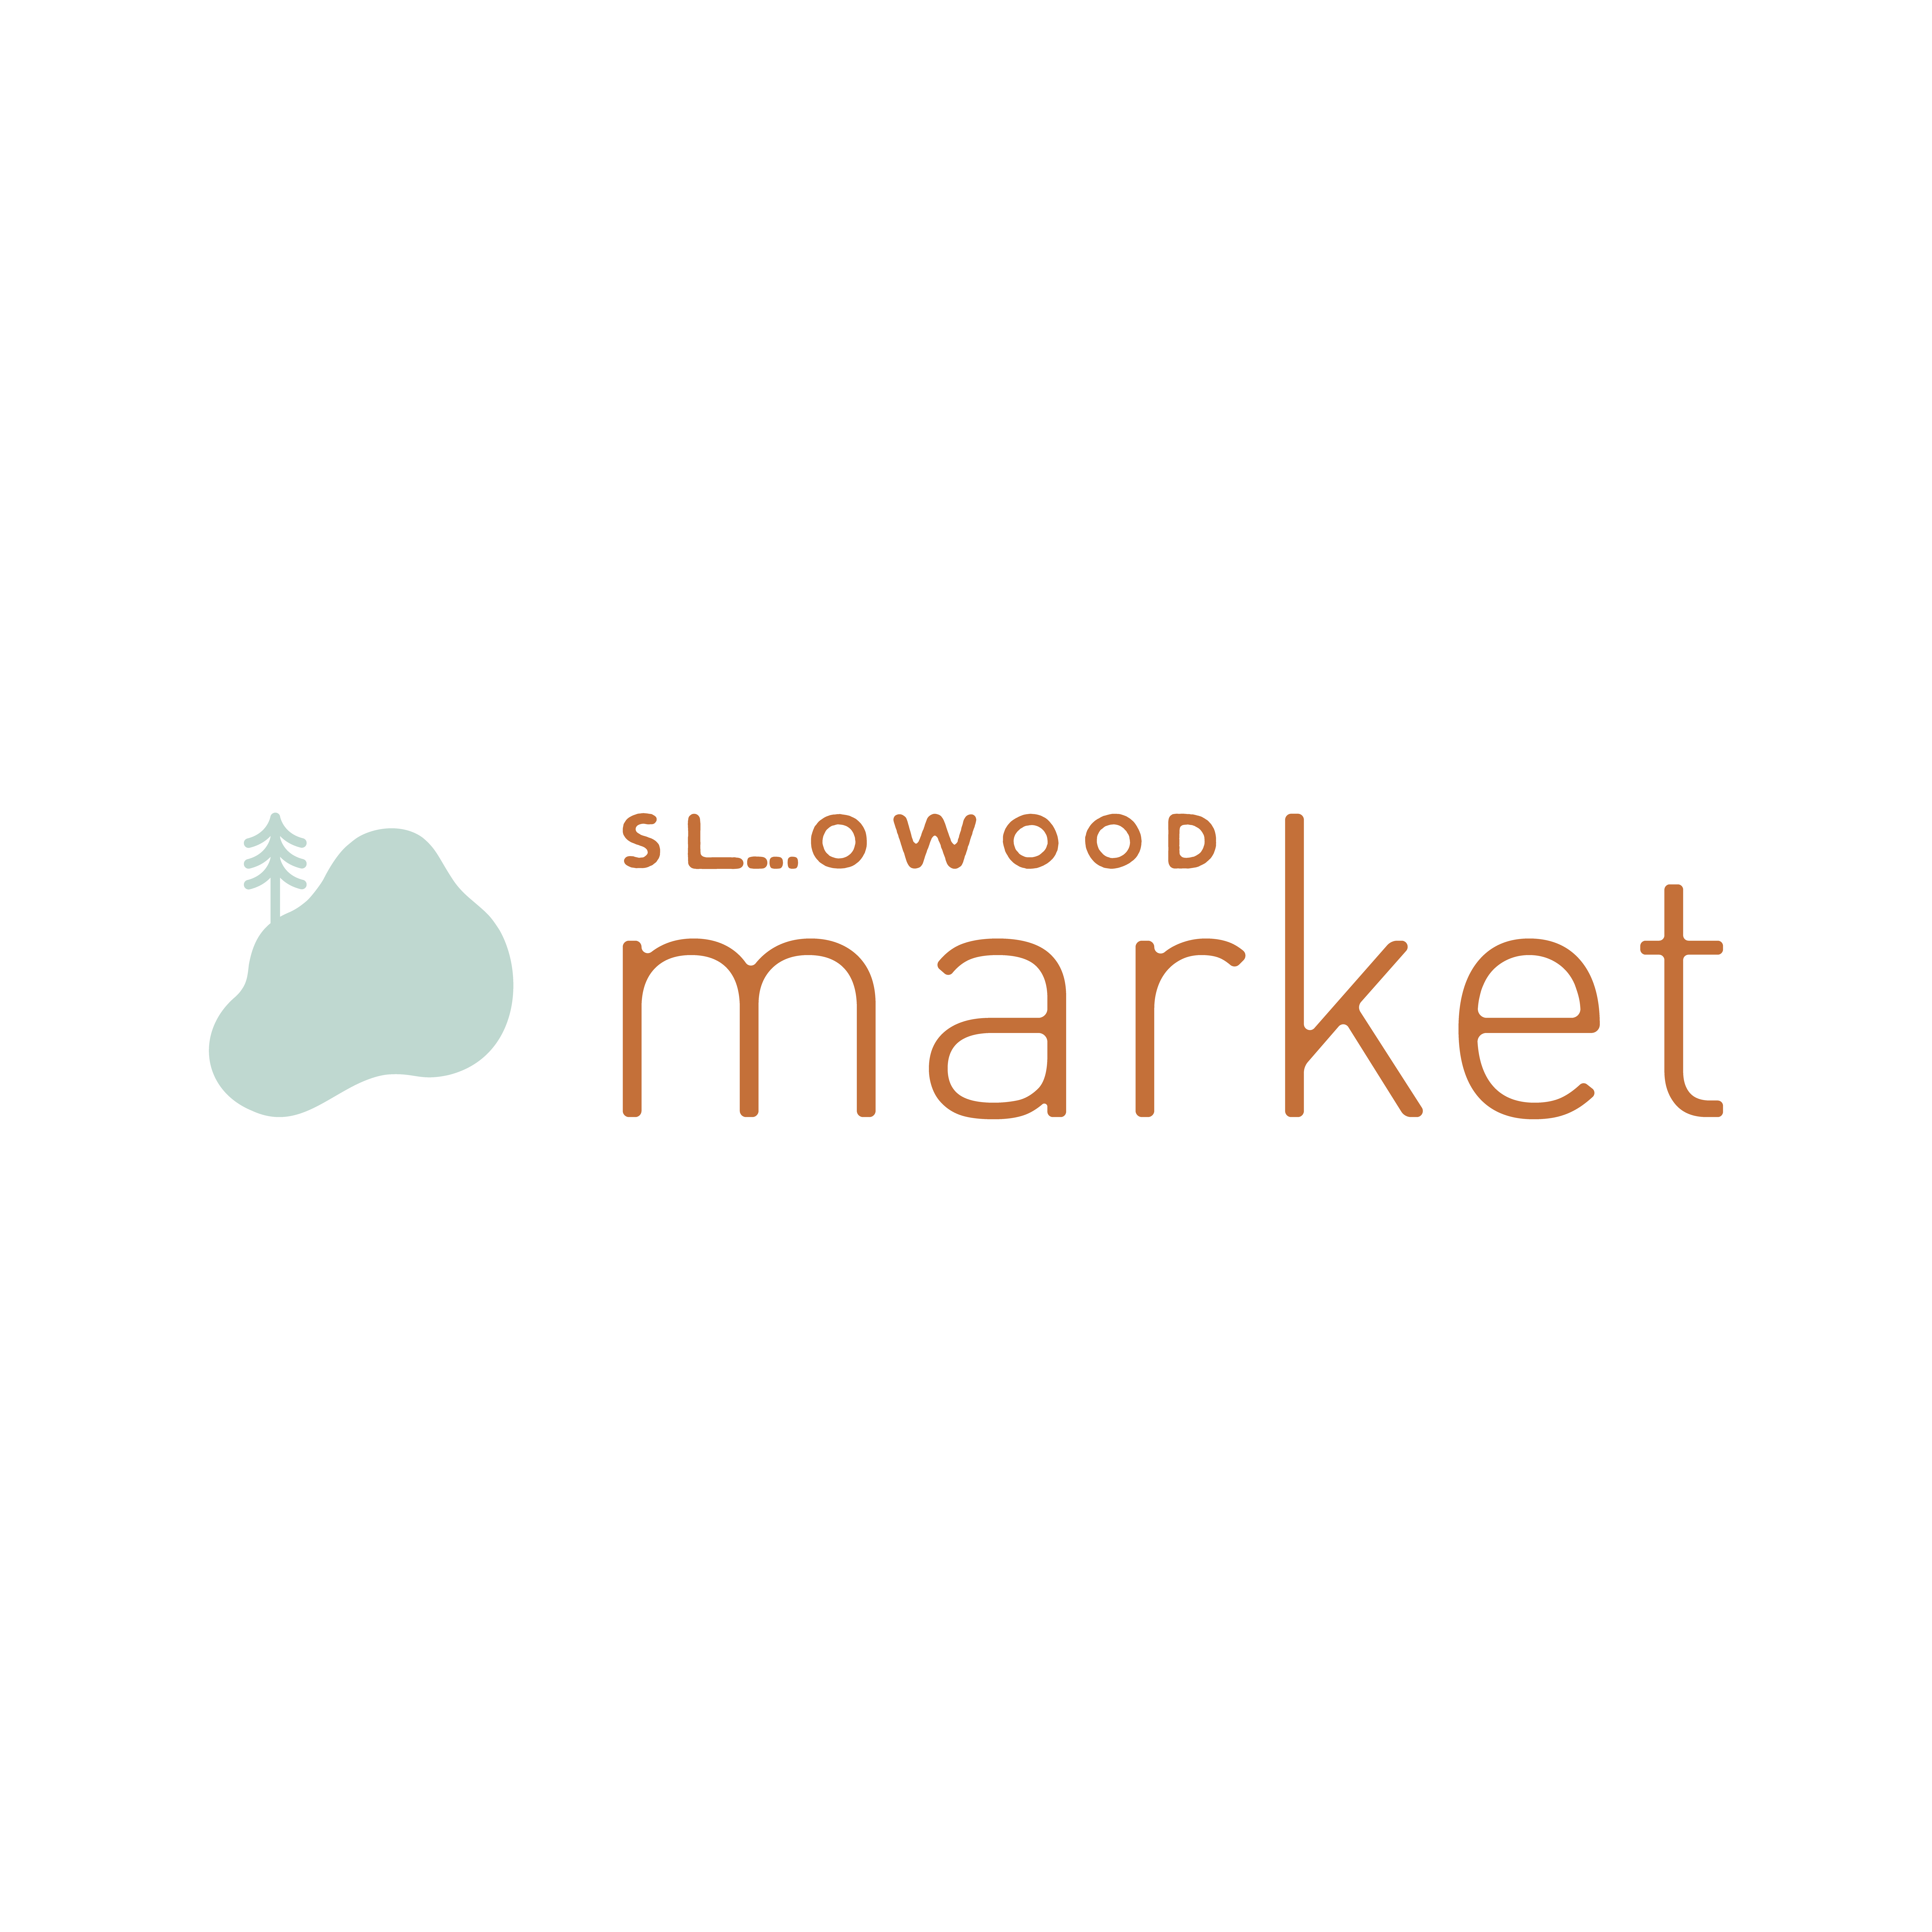 Slowood Market